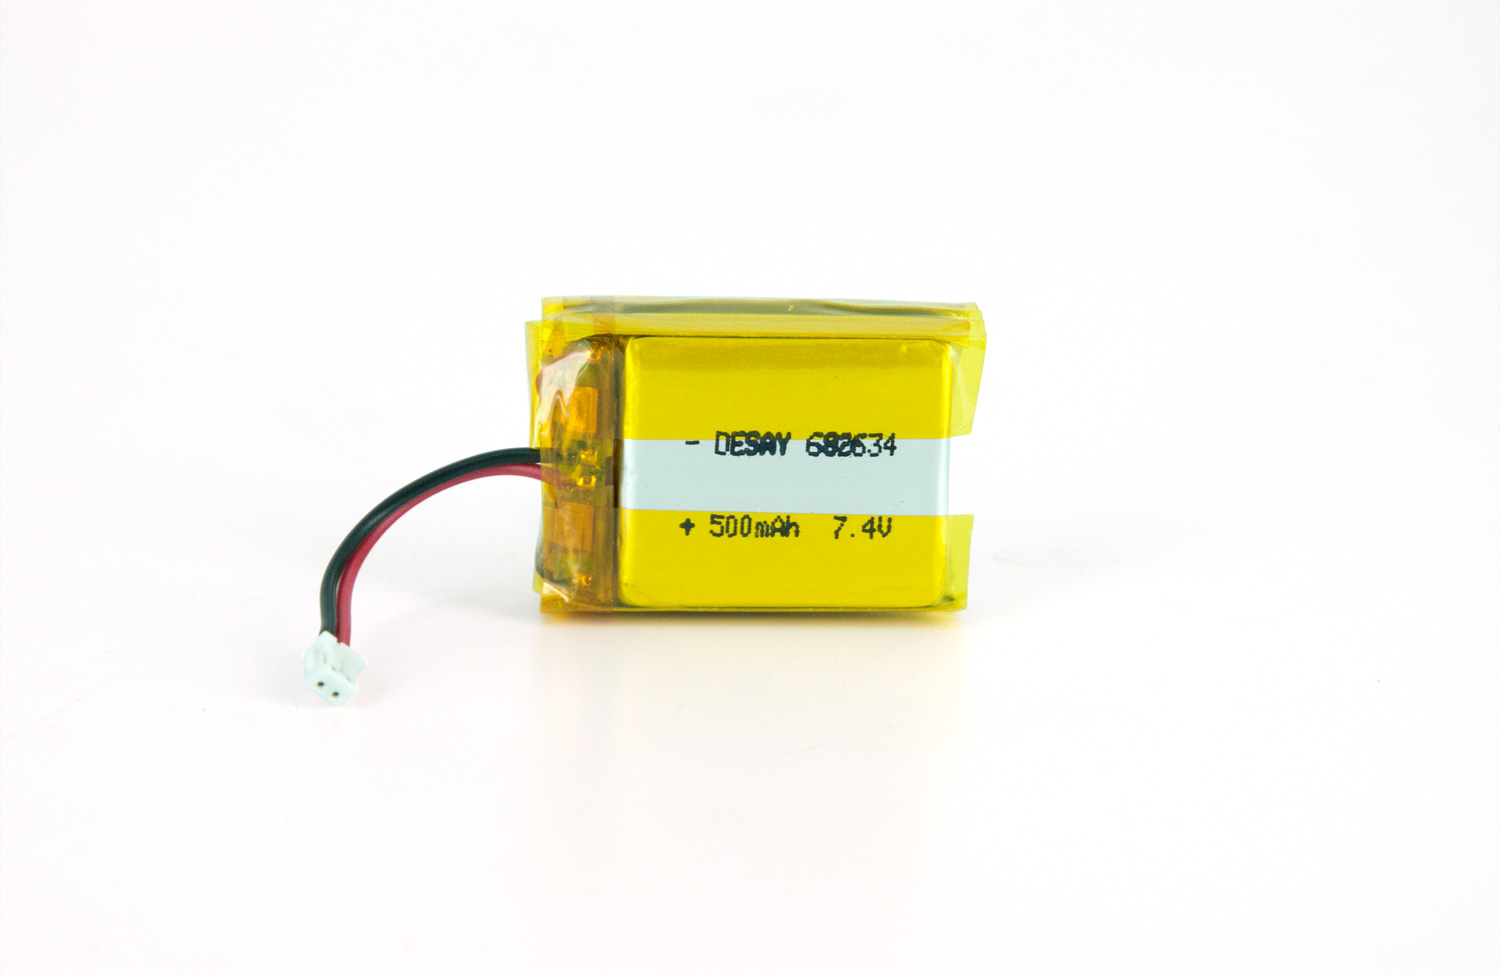 Transmitter Battery for SportDog 1225 Series